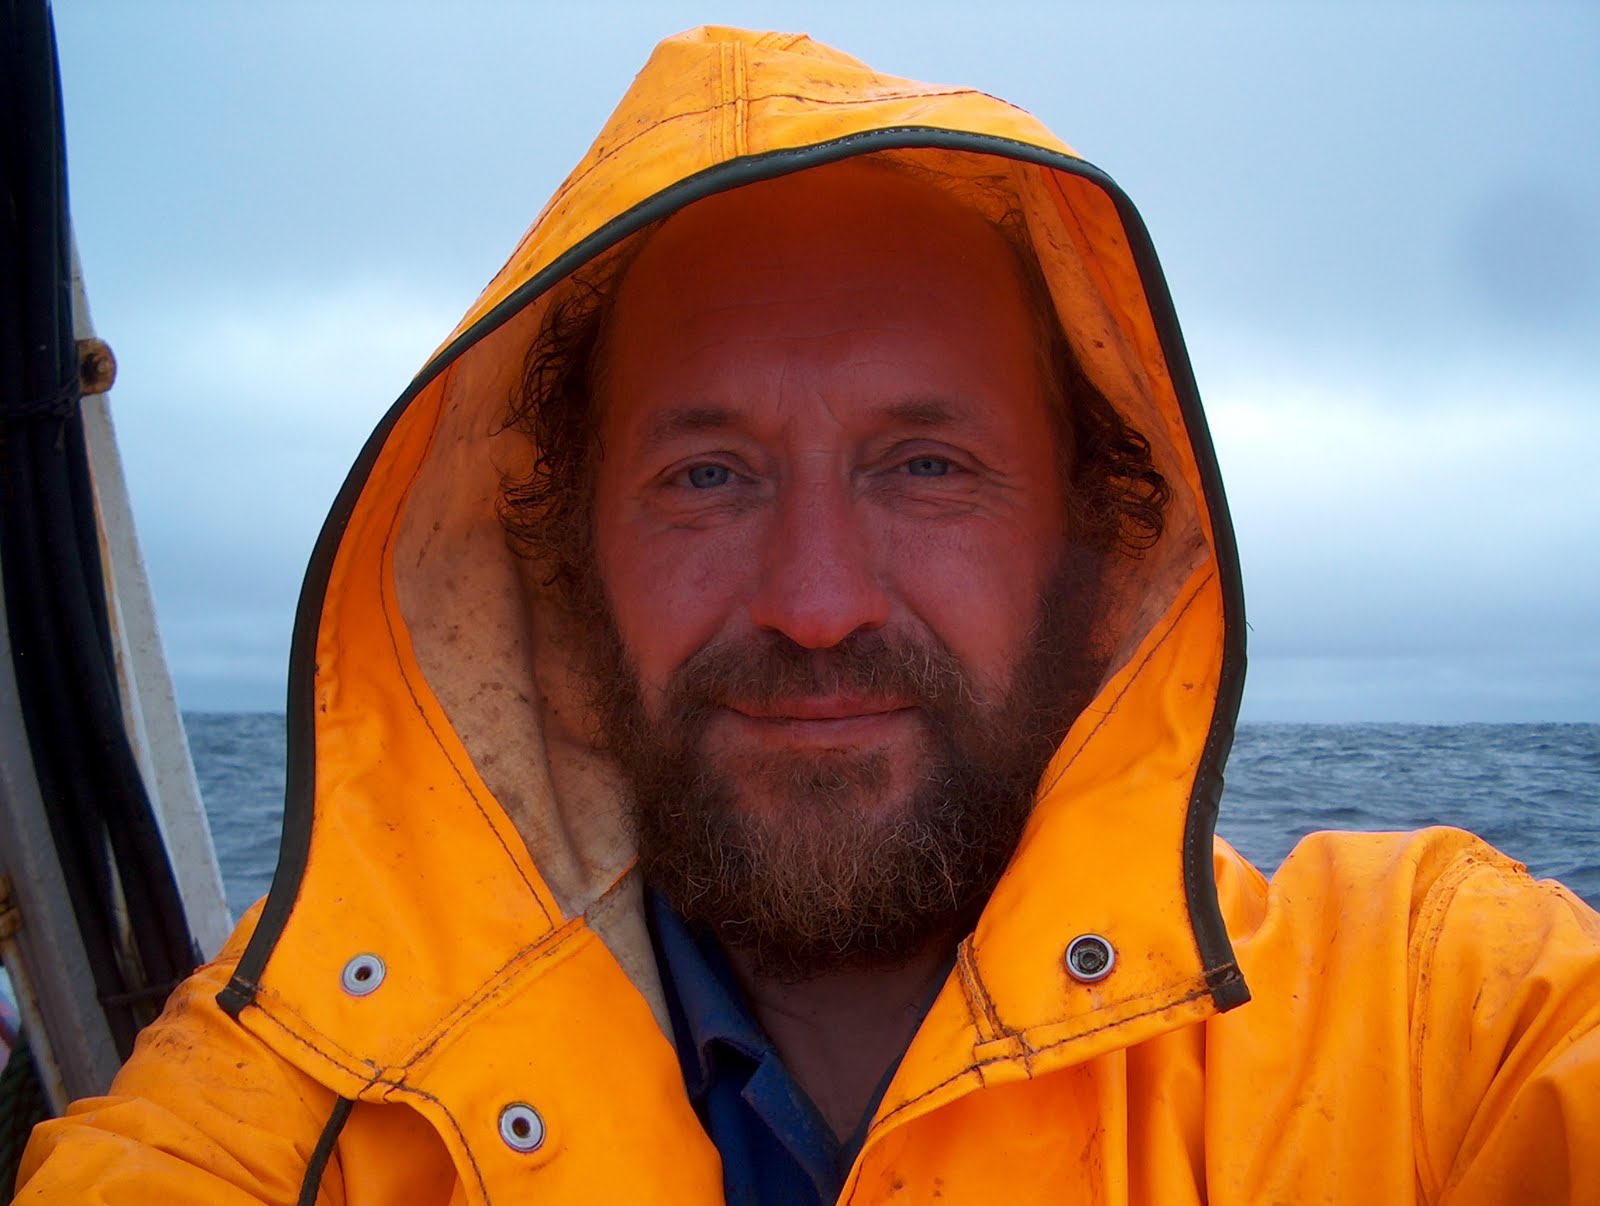 molecule provoke In other words Kalastaja kuivalla maalla: Grönlantilaiset kalastajan käsineet